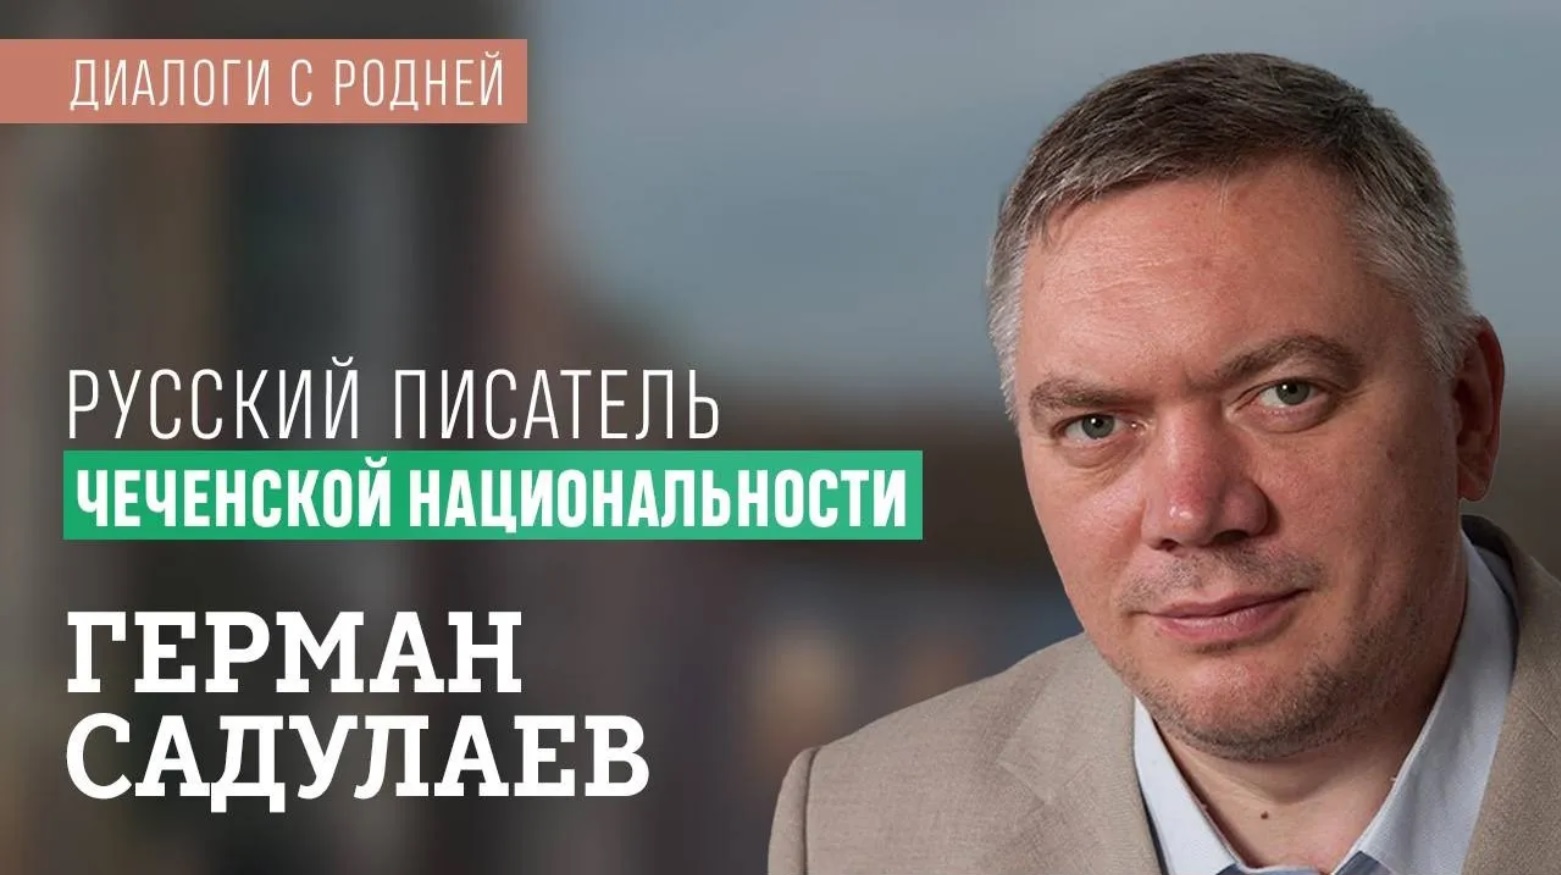 Садулаев: о войне, социальном расизме, Путине, технологии правящего класса, невозможности отступать